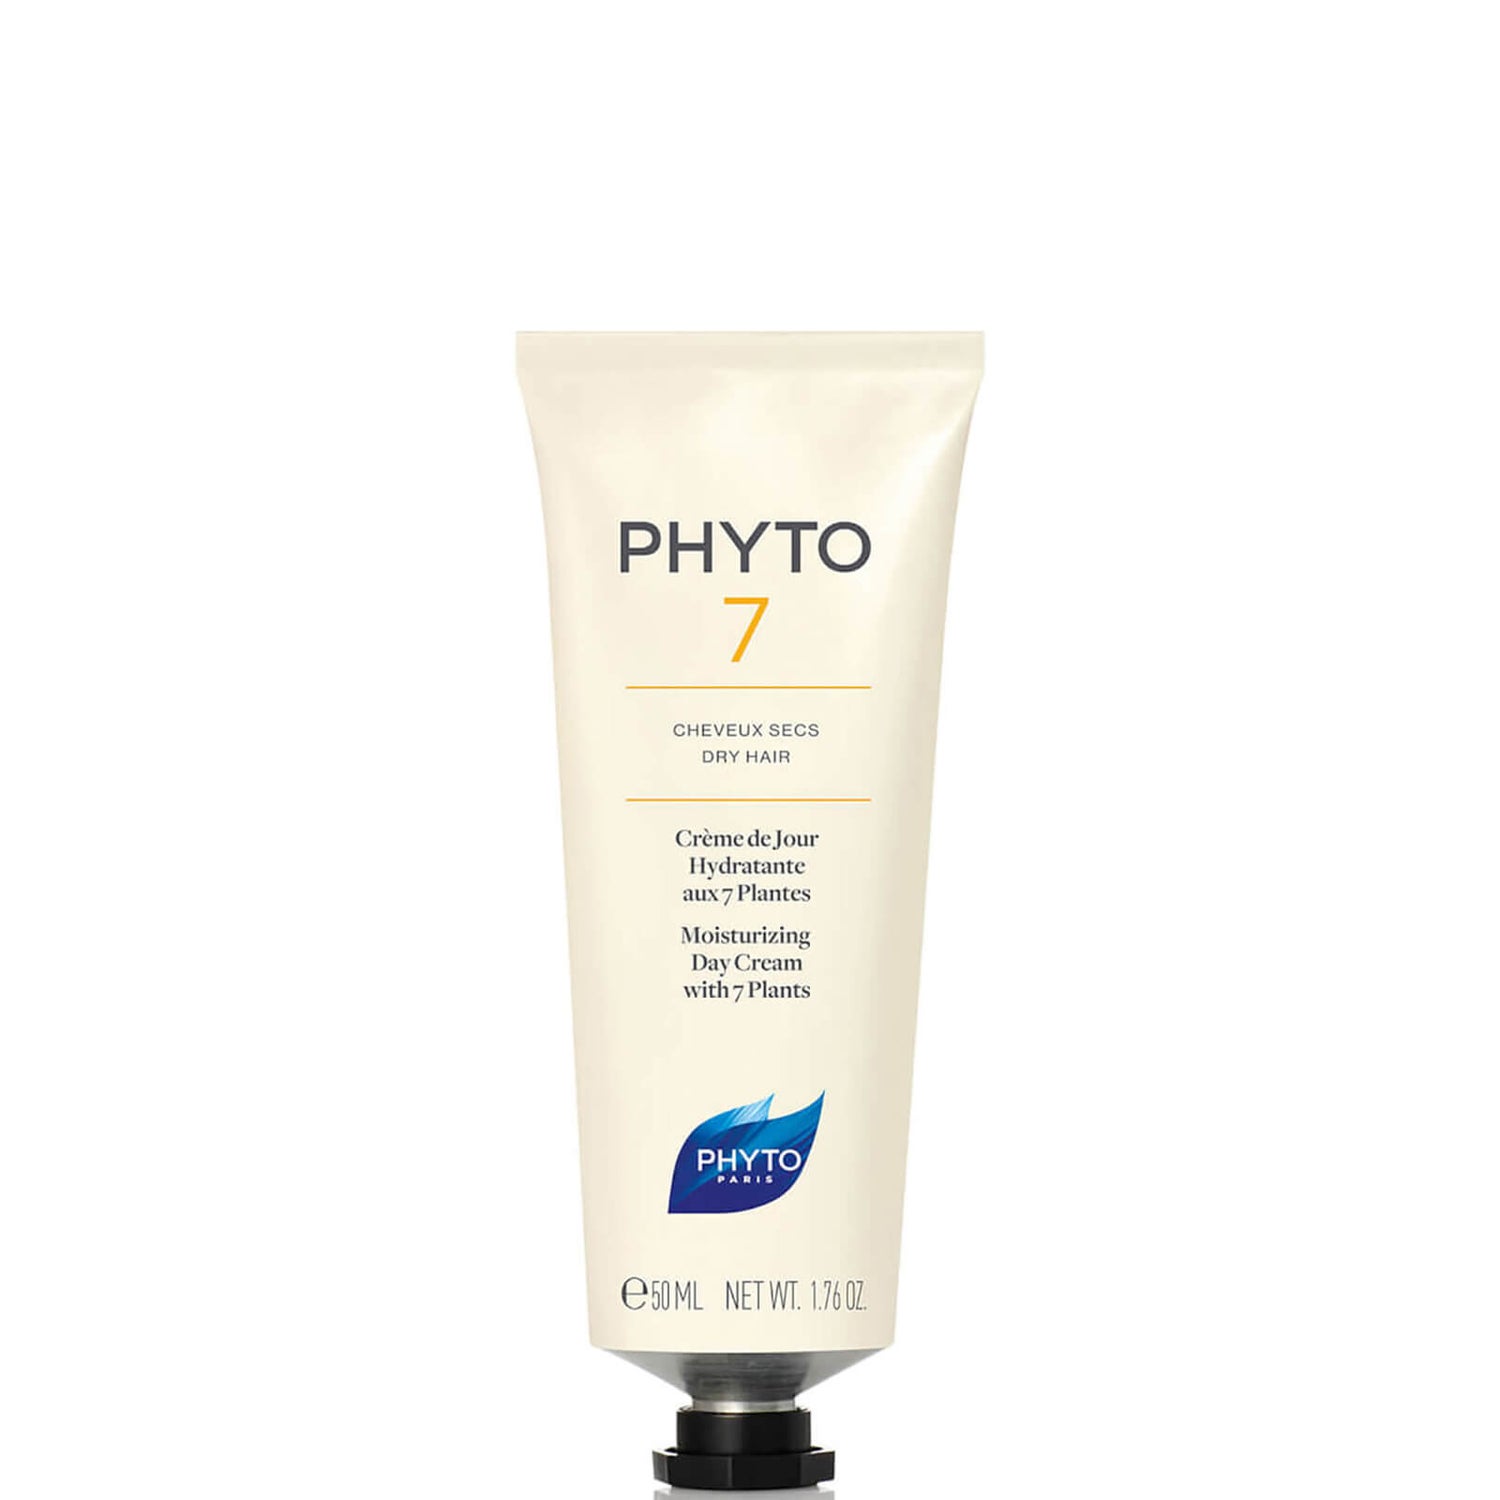 Crème de jour hydratation brillance aux 7 plantes Phyto Phyto7 50ml